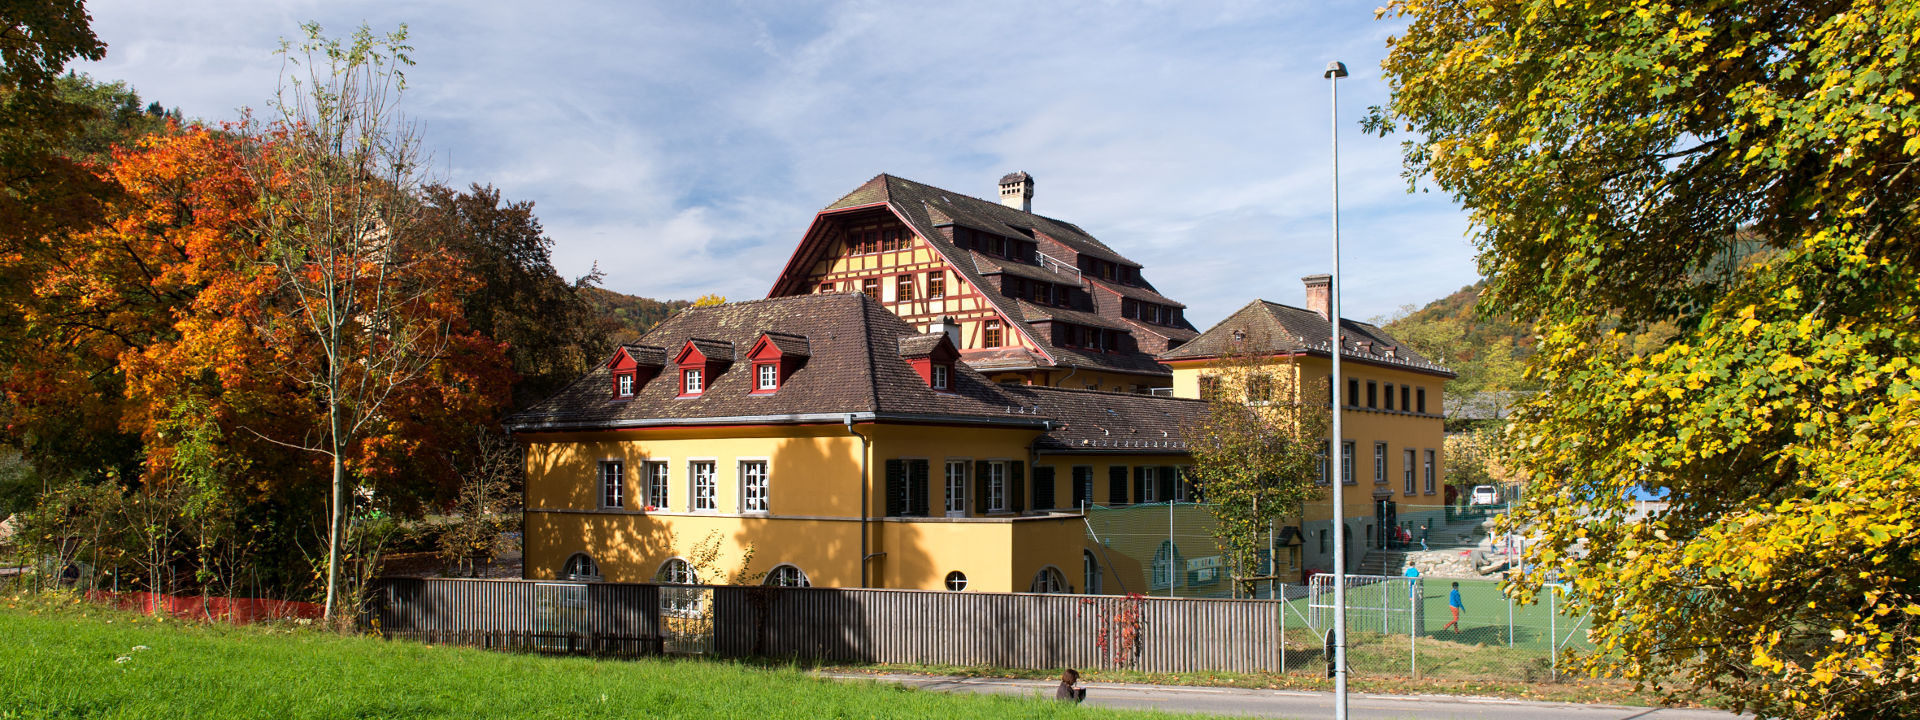 International School of Schaffhausen